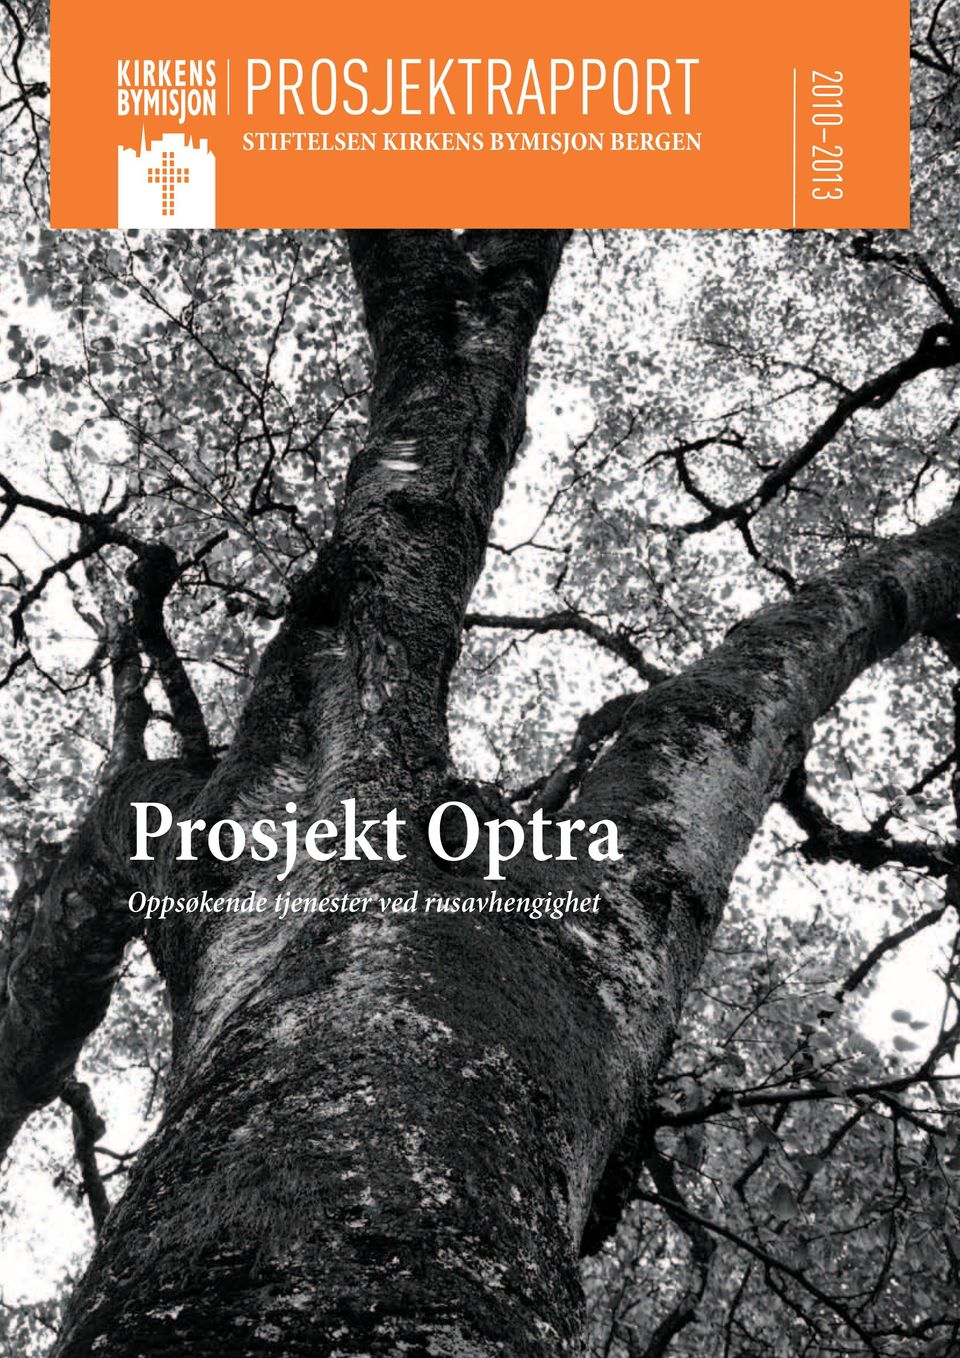 2013 Prosjekt Optra